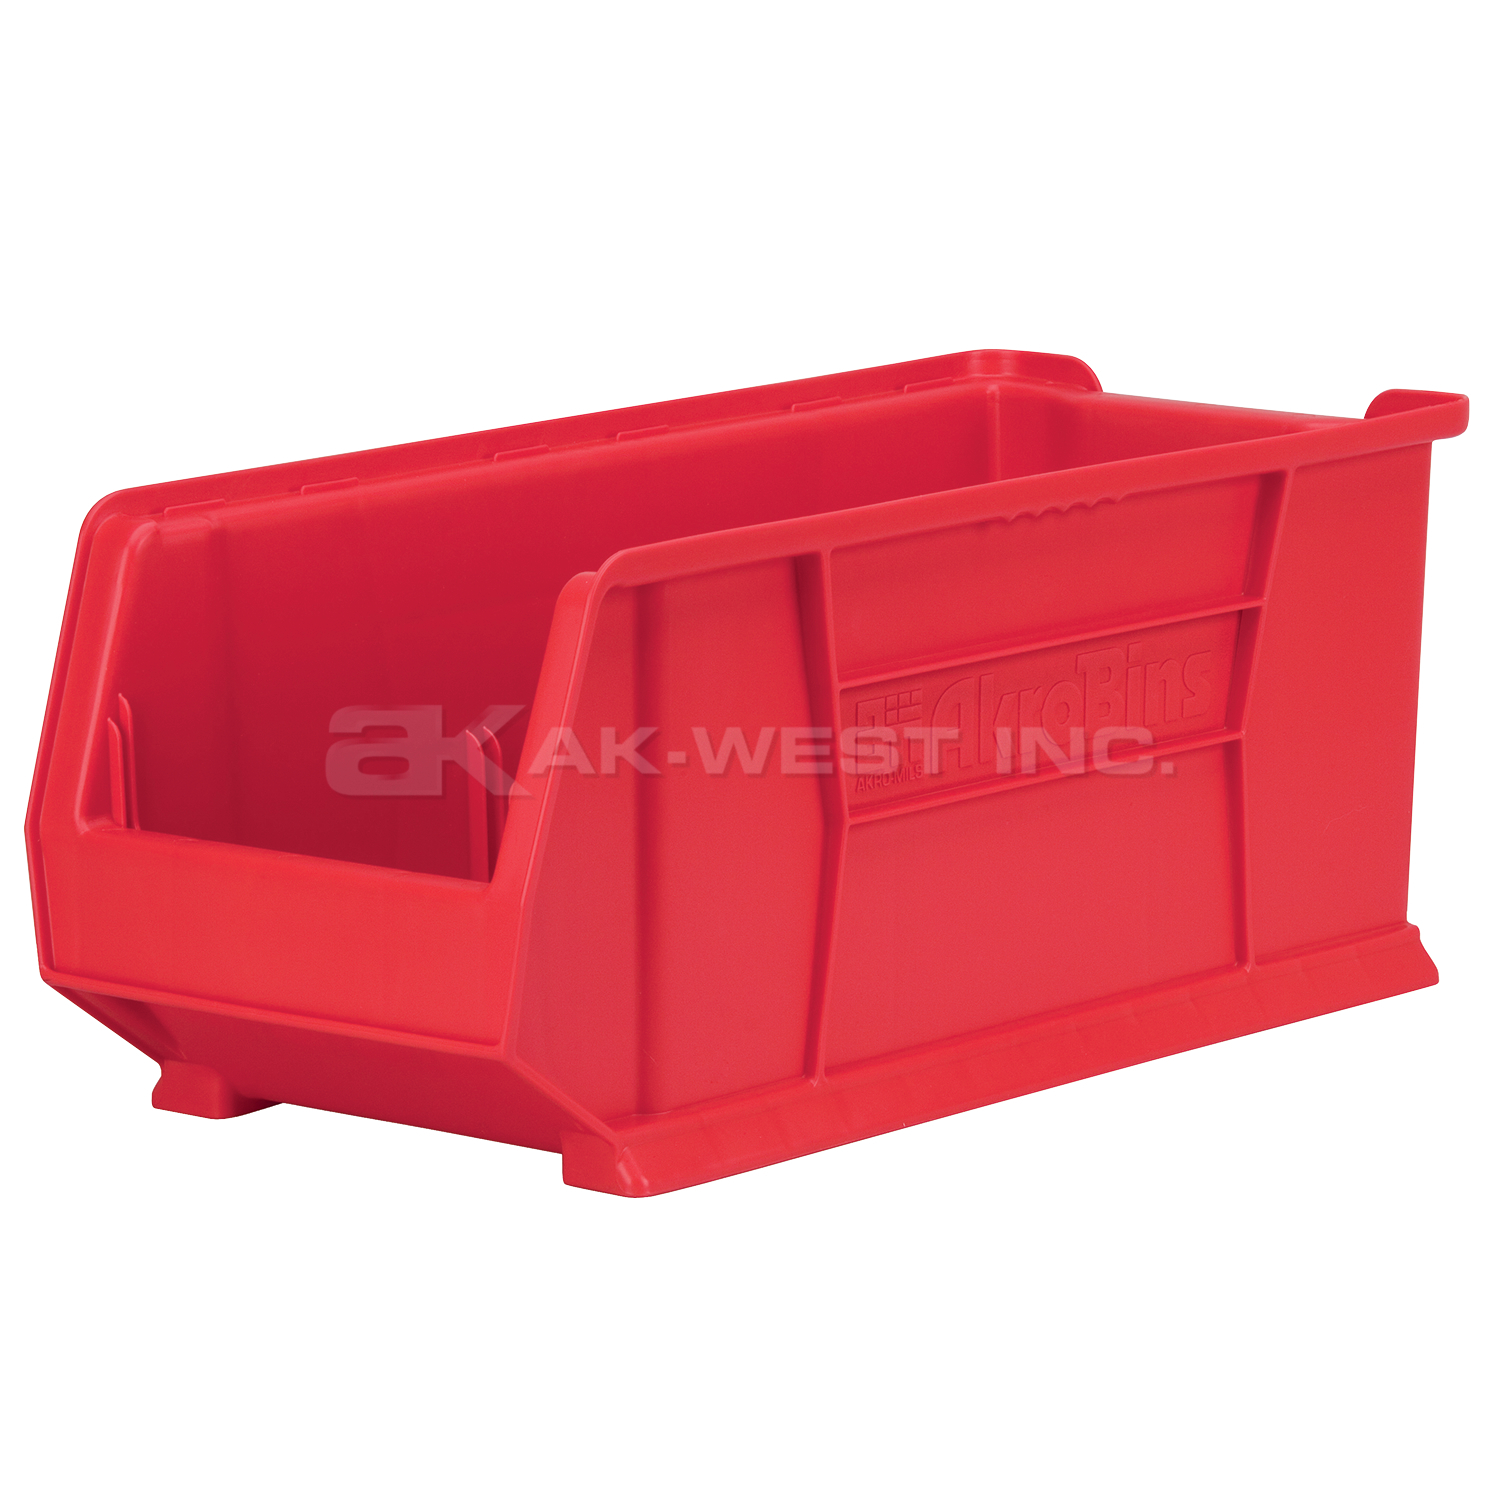 Red, 23-7/8" x 11" x 10" Stacking Shelf Bin (4 Per Carton)